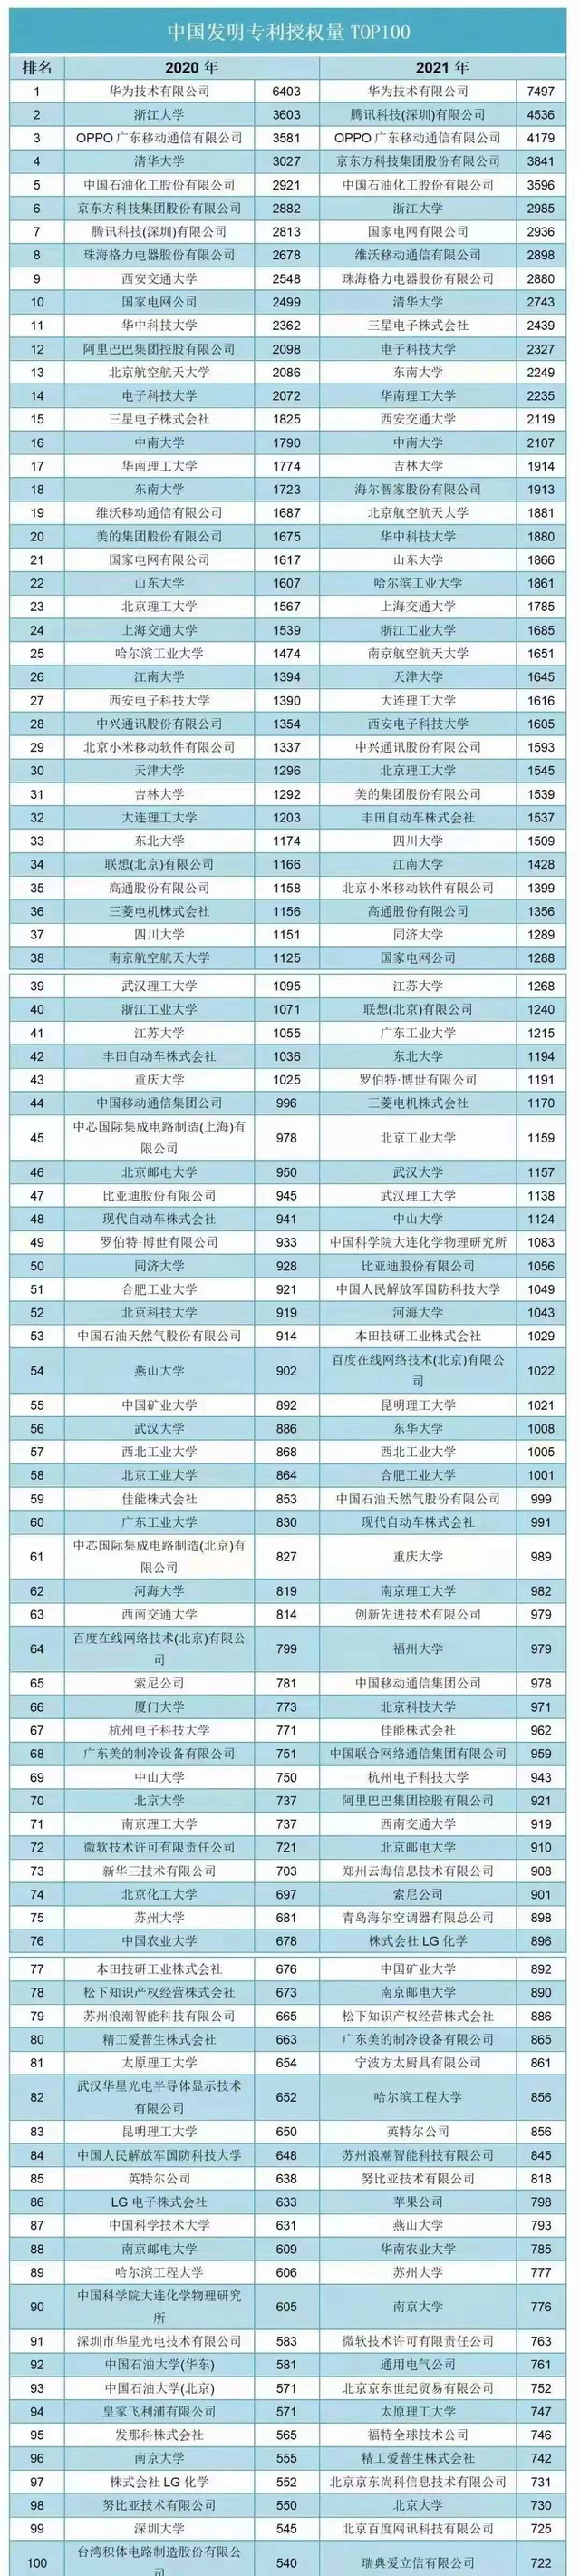 显卡|中国发明专利授权量前100名榜单，可以看出什么